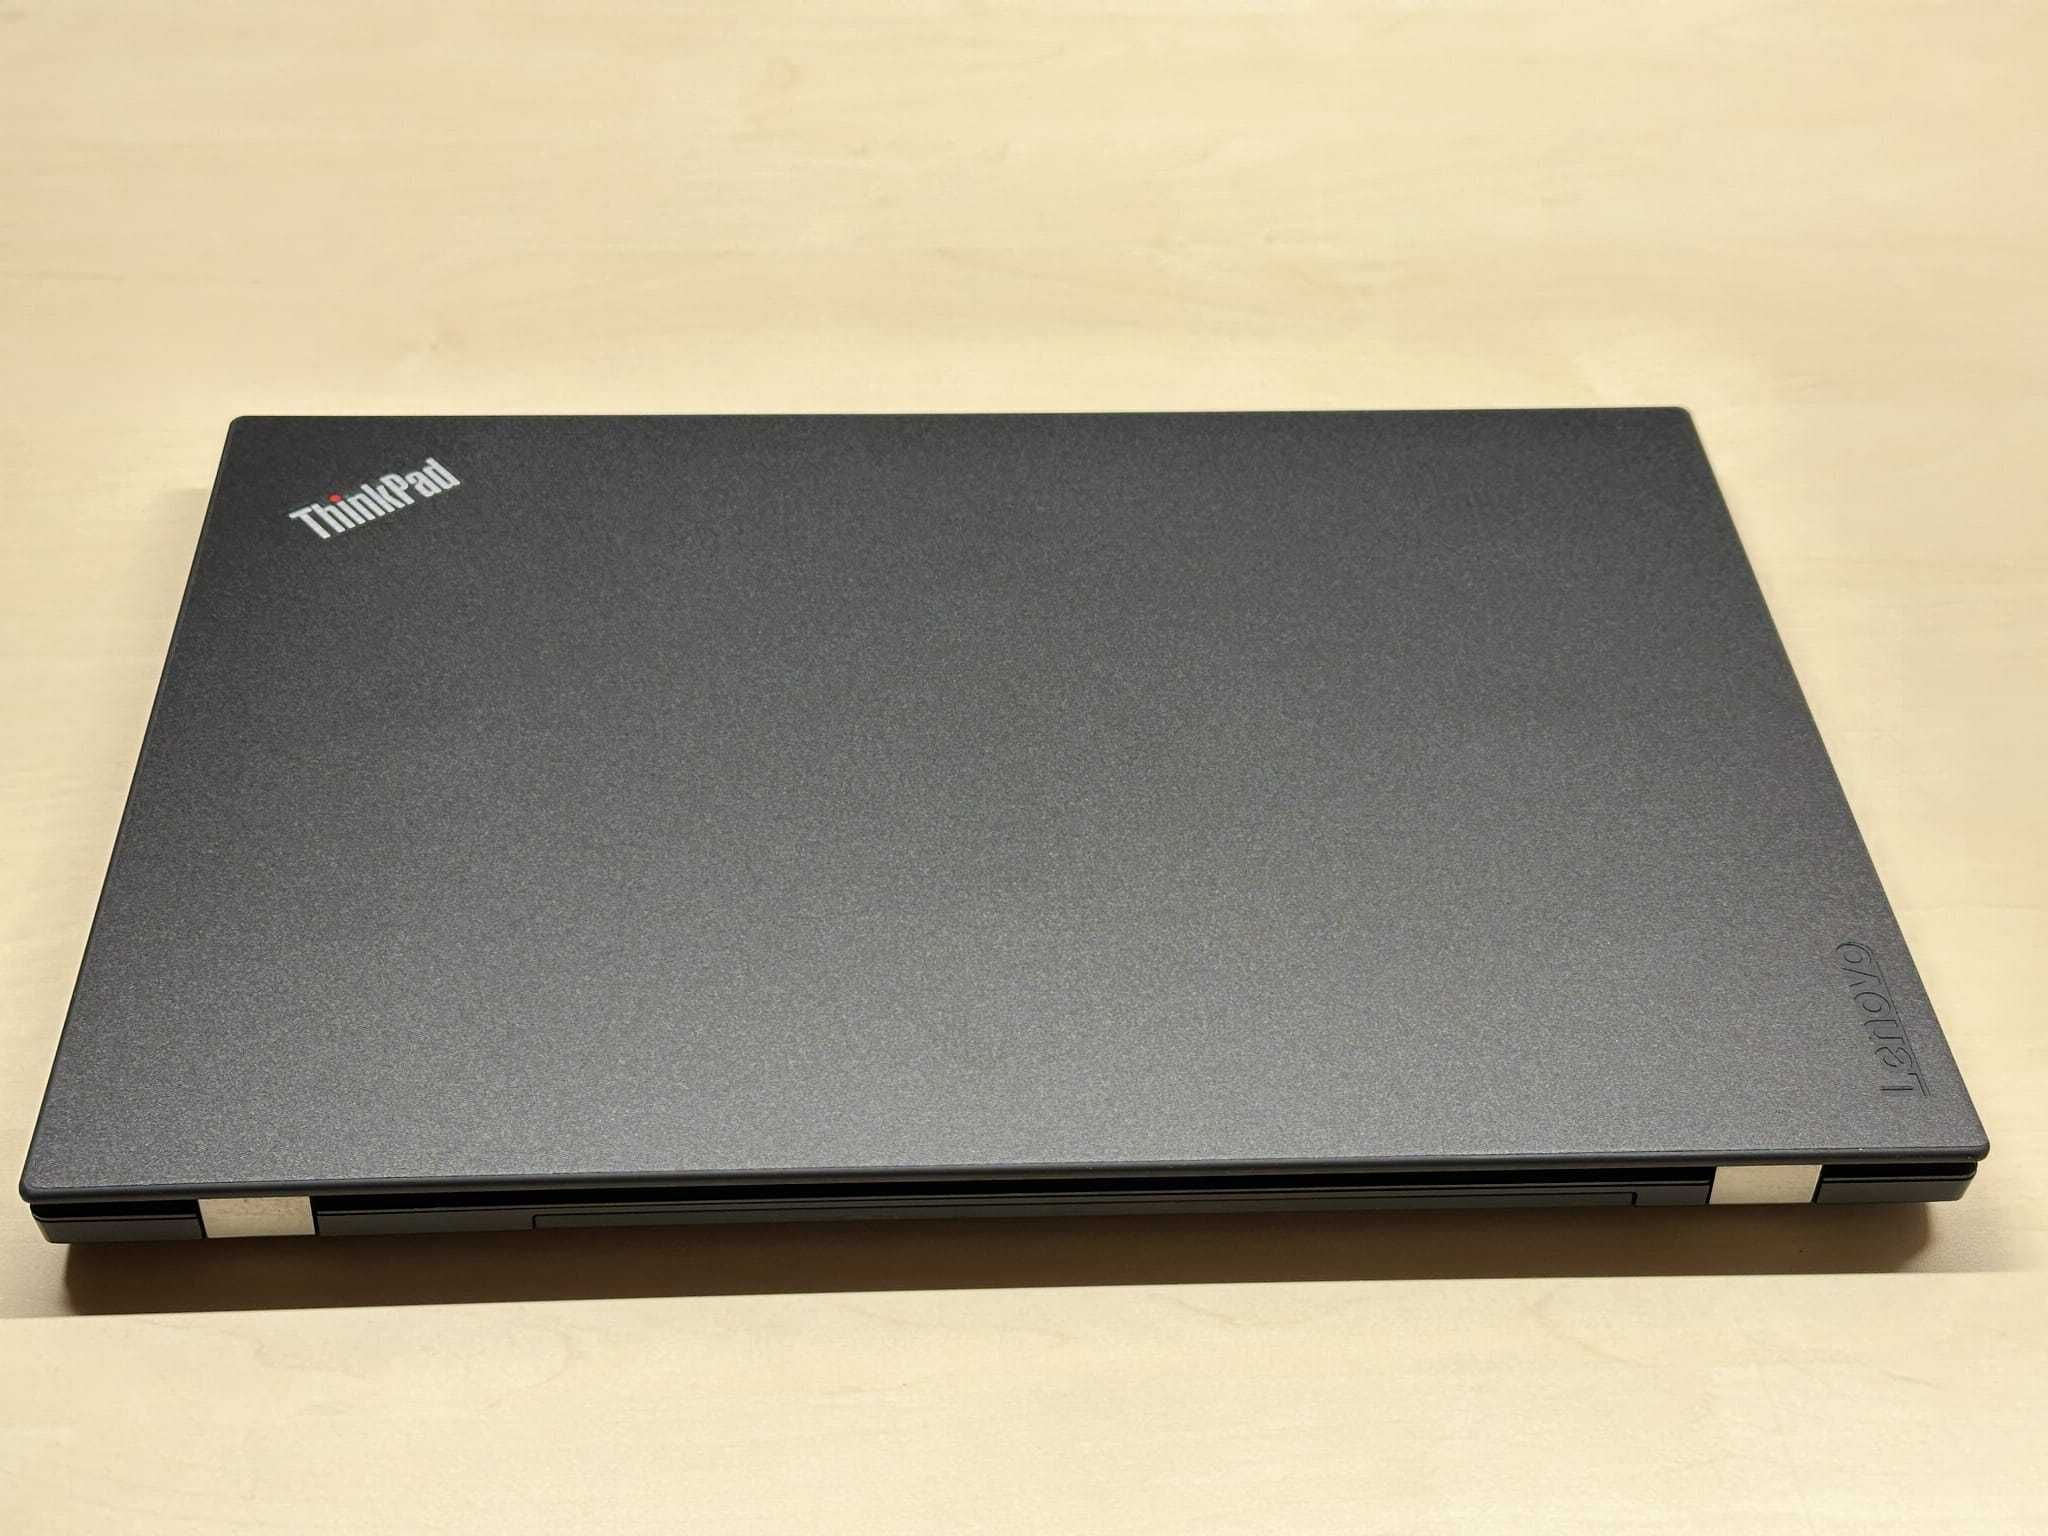 Laptop Lenovo T580 i7 - Twoje Narzędzie do Efektywnej Pracy!